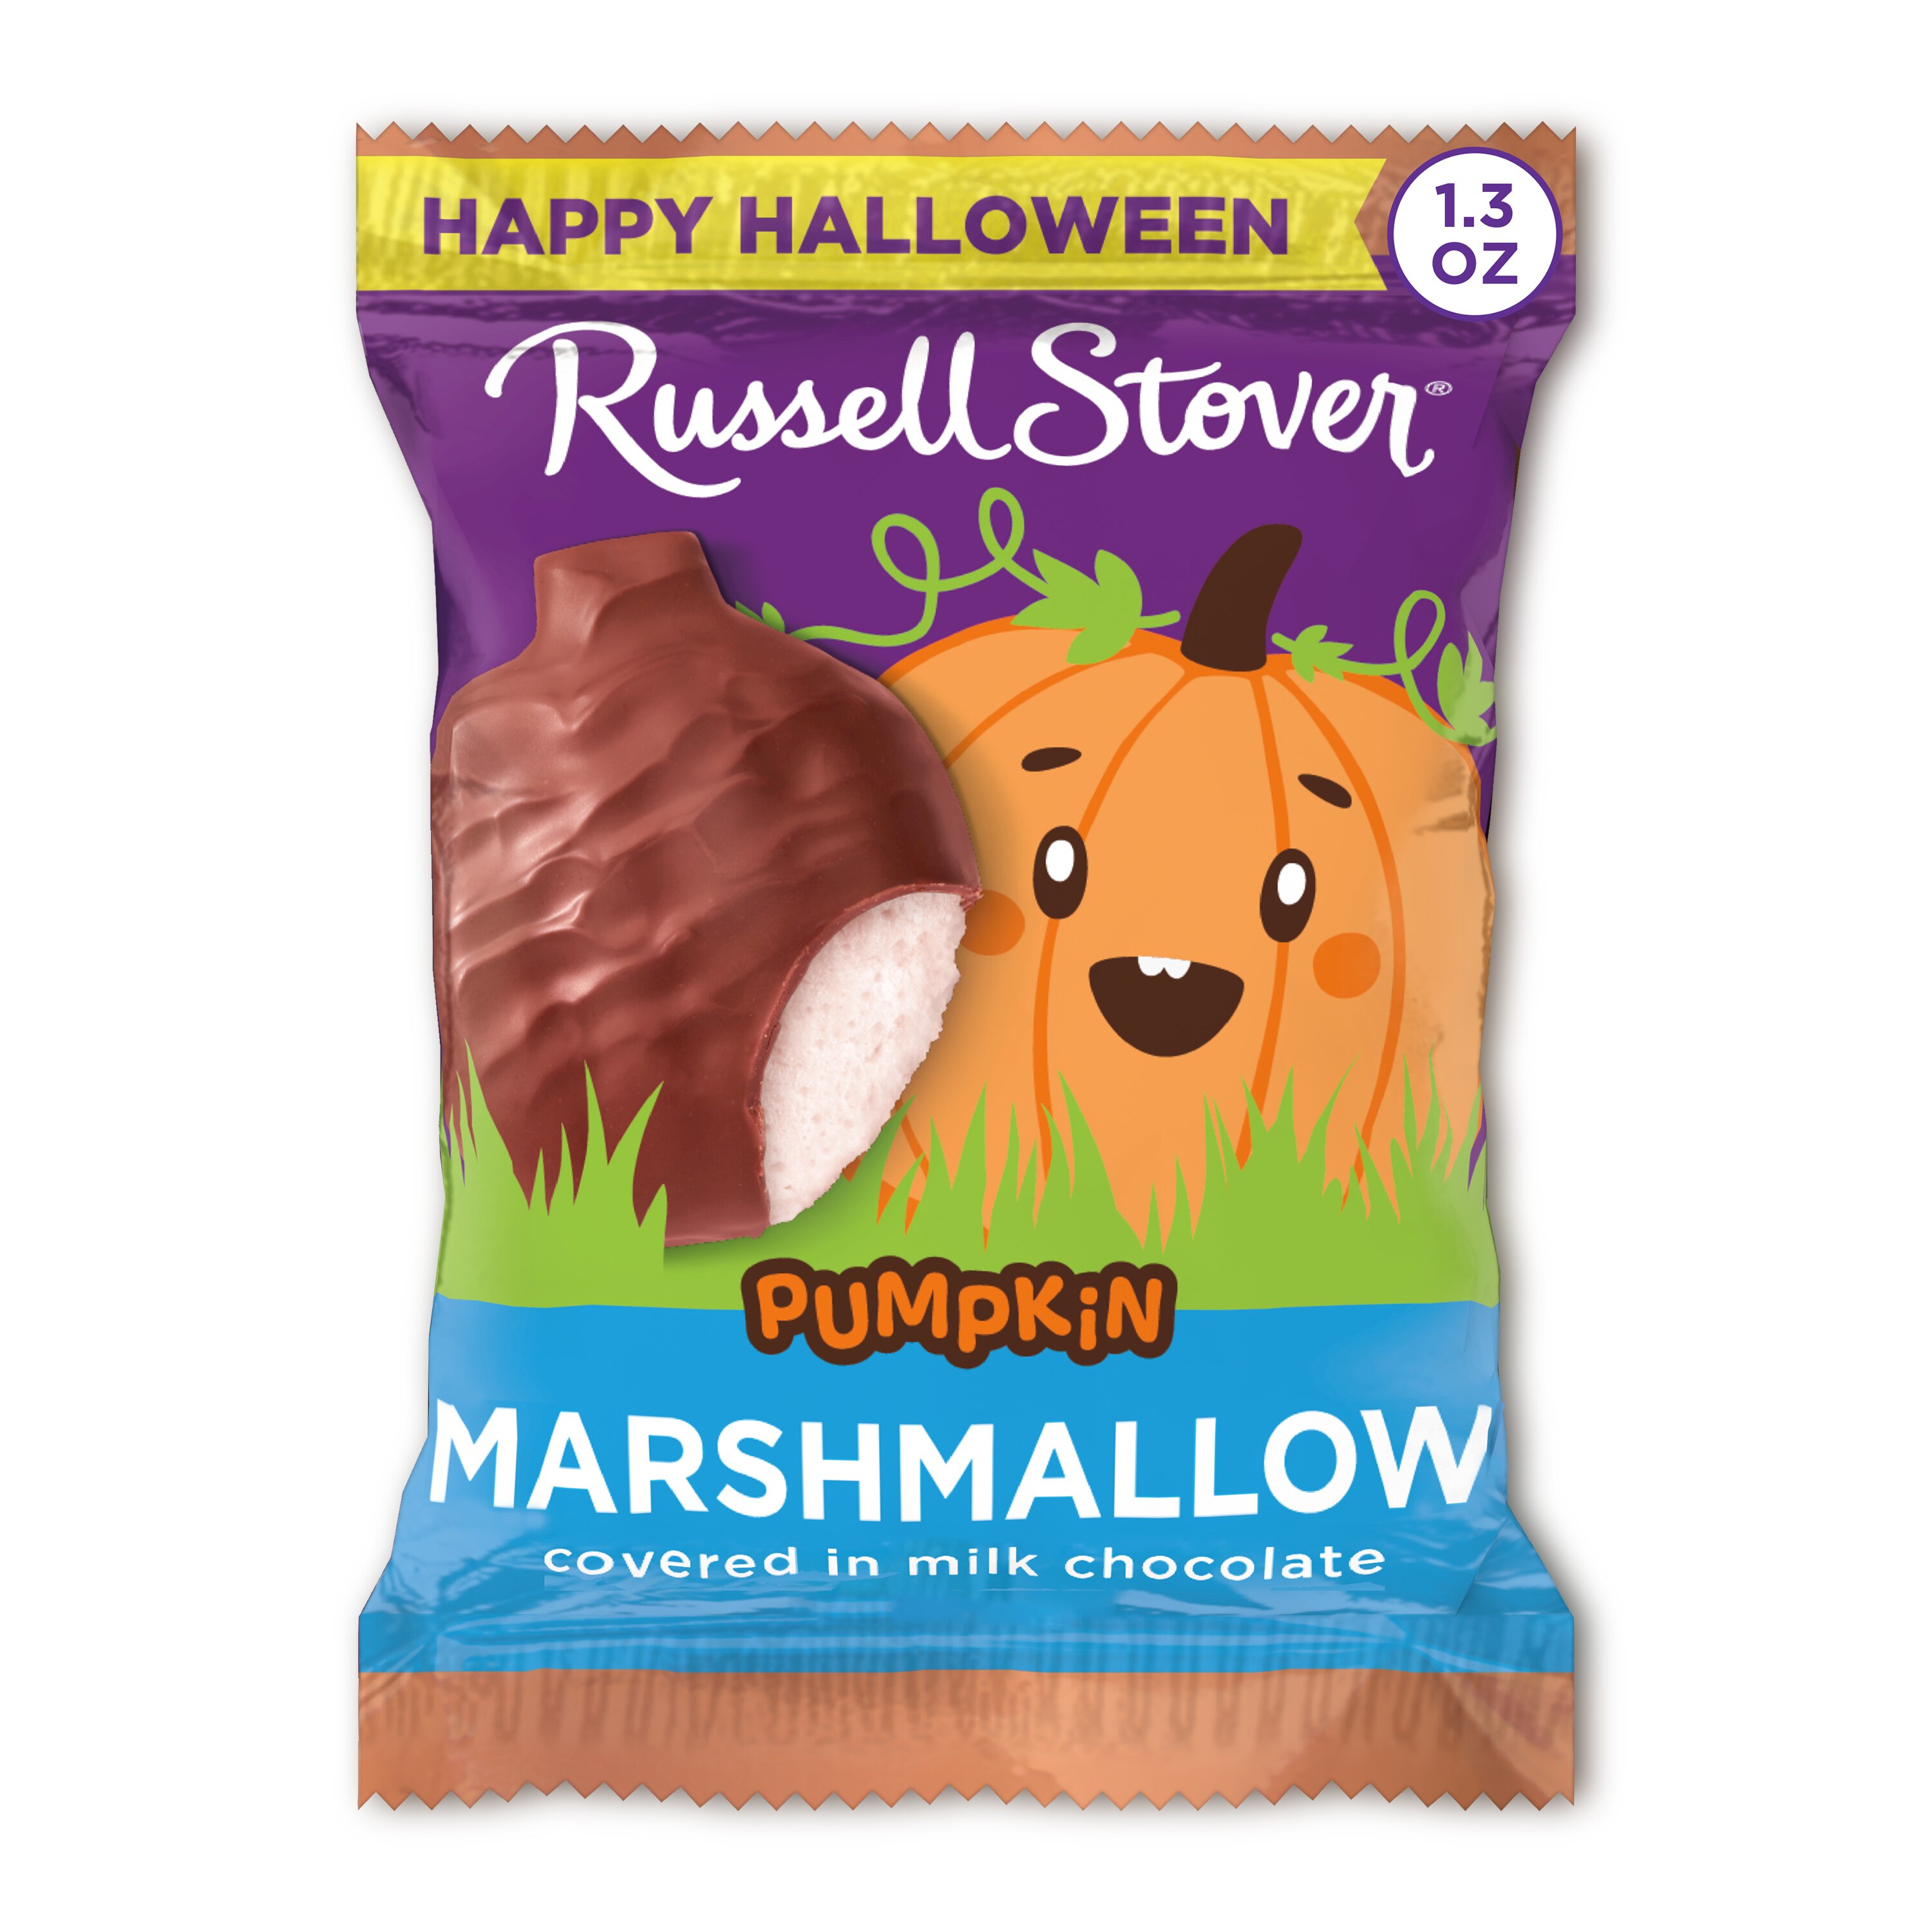 Russell Stover Halloween Milk Chocolate Marshmallow Pumpkin, 1.3 oz